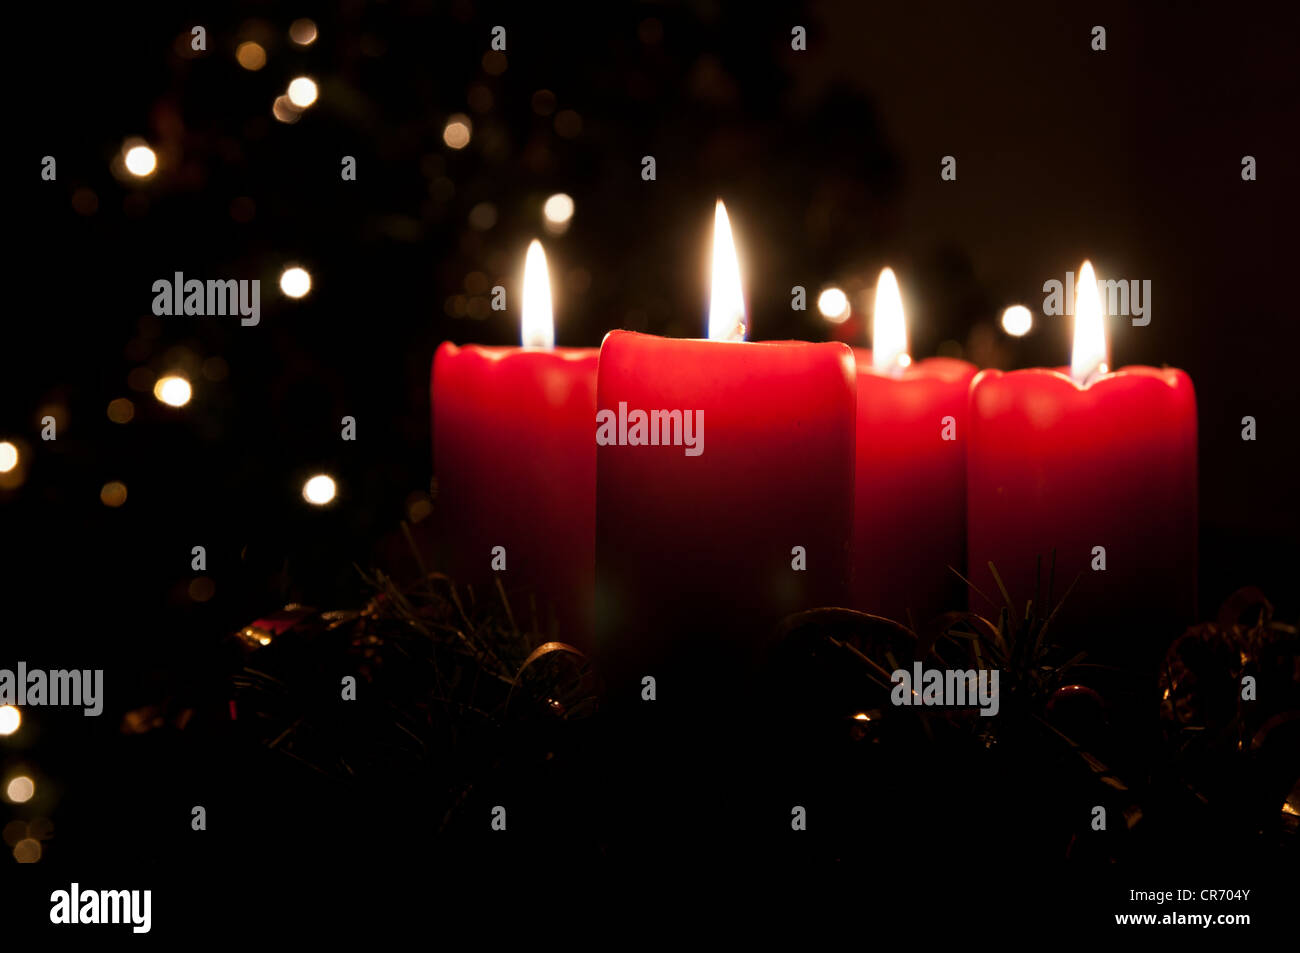 Natale corona di Avvento con red candele accese. Luci su X-mas tree in background Foto Stock